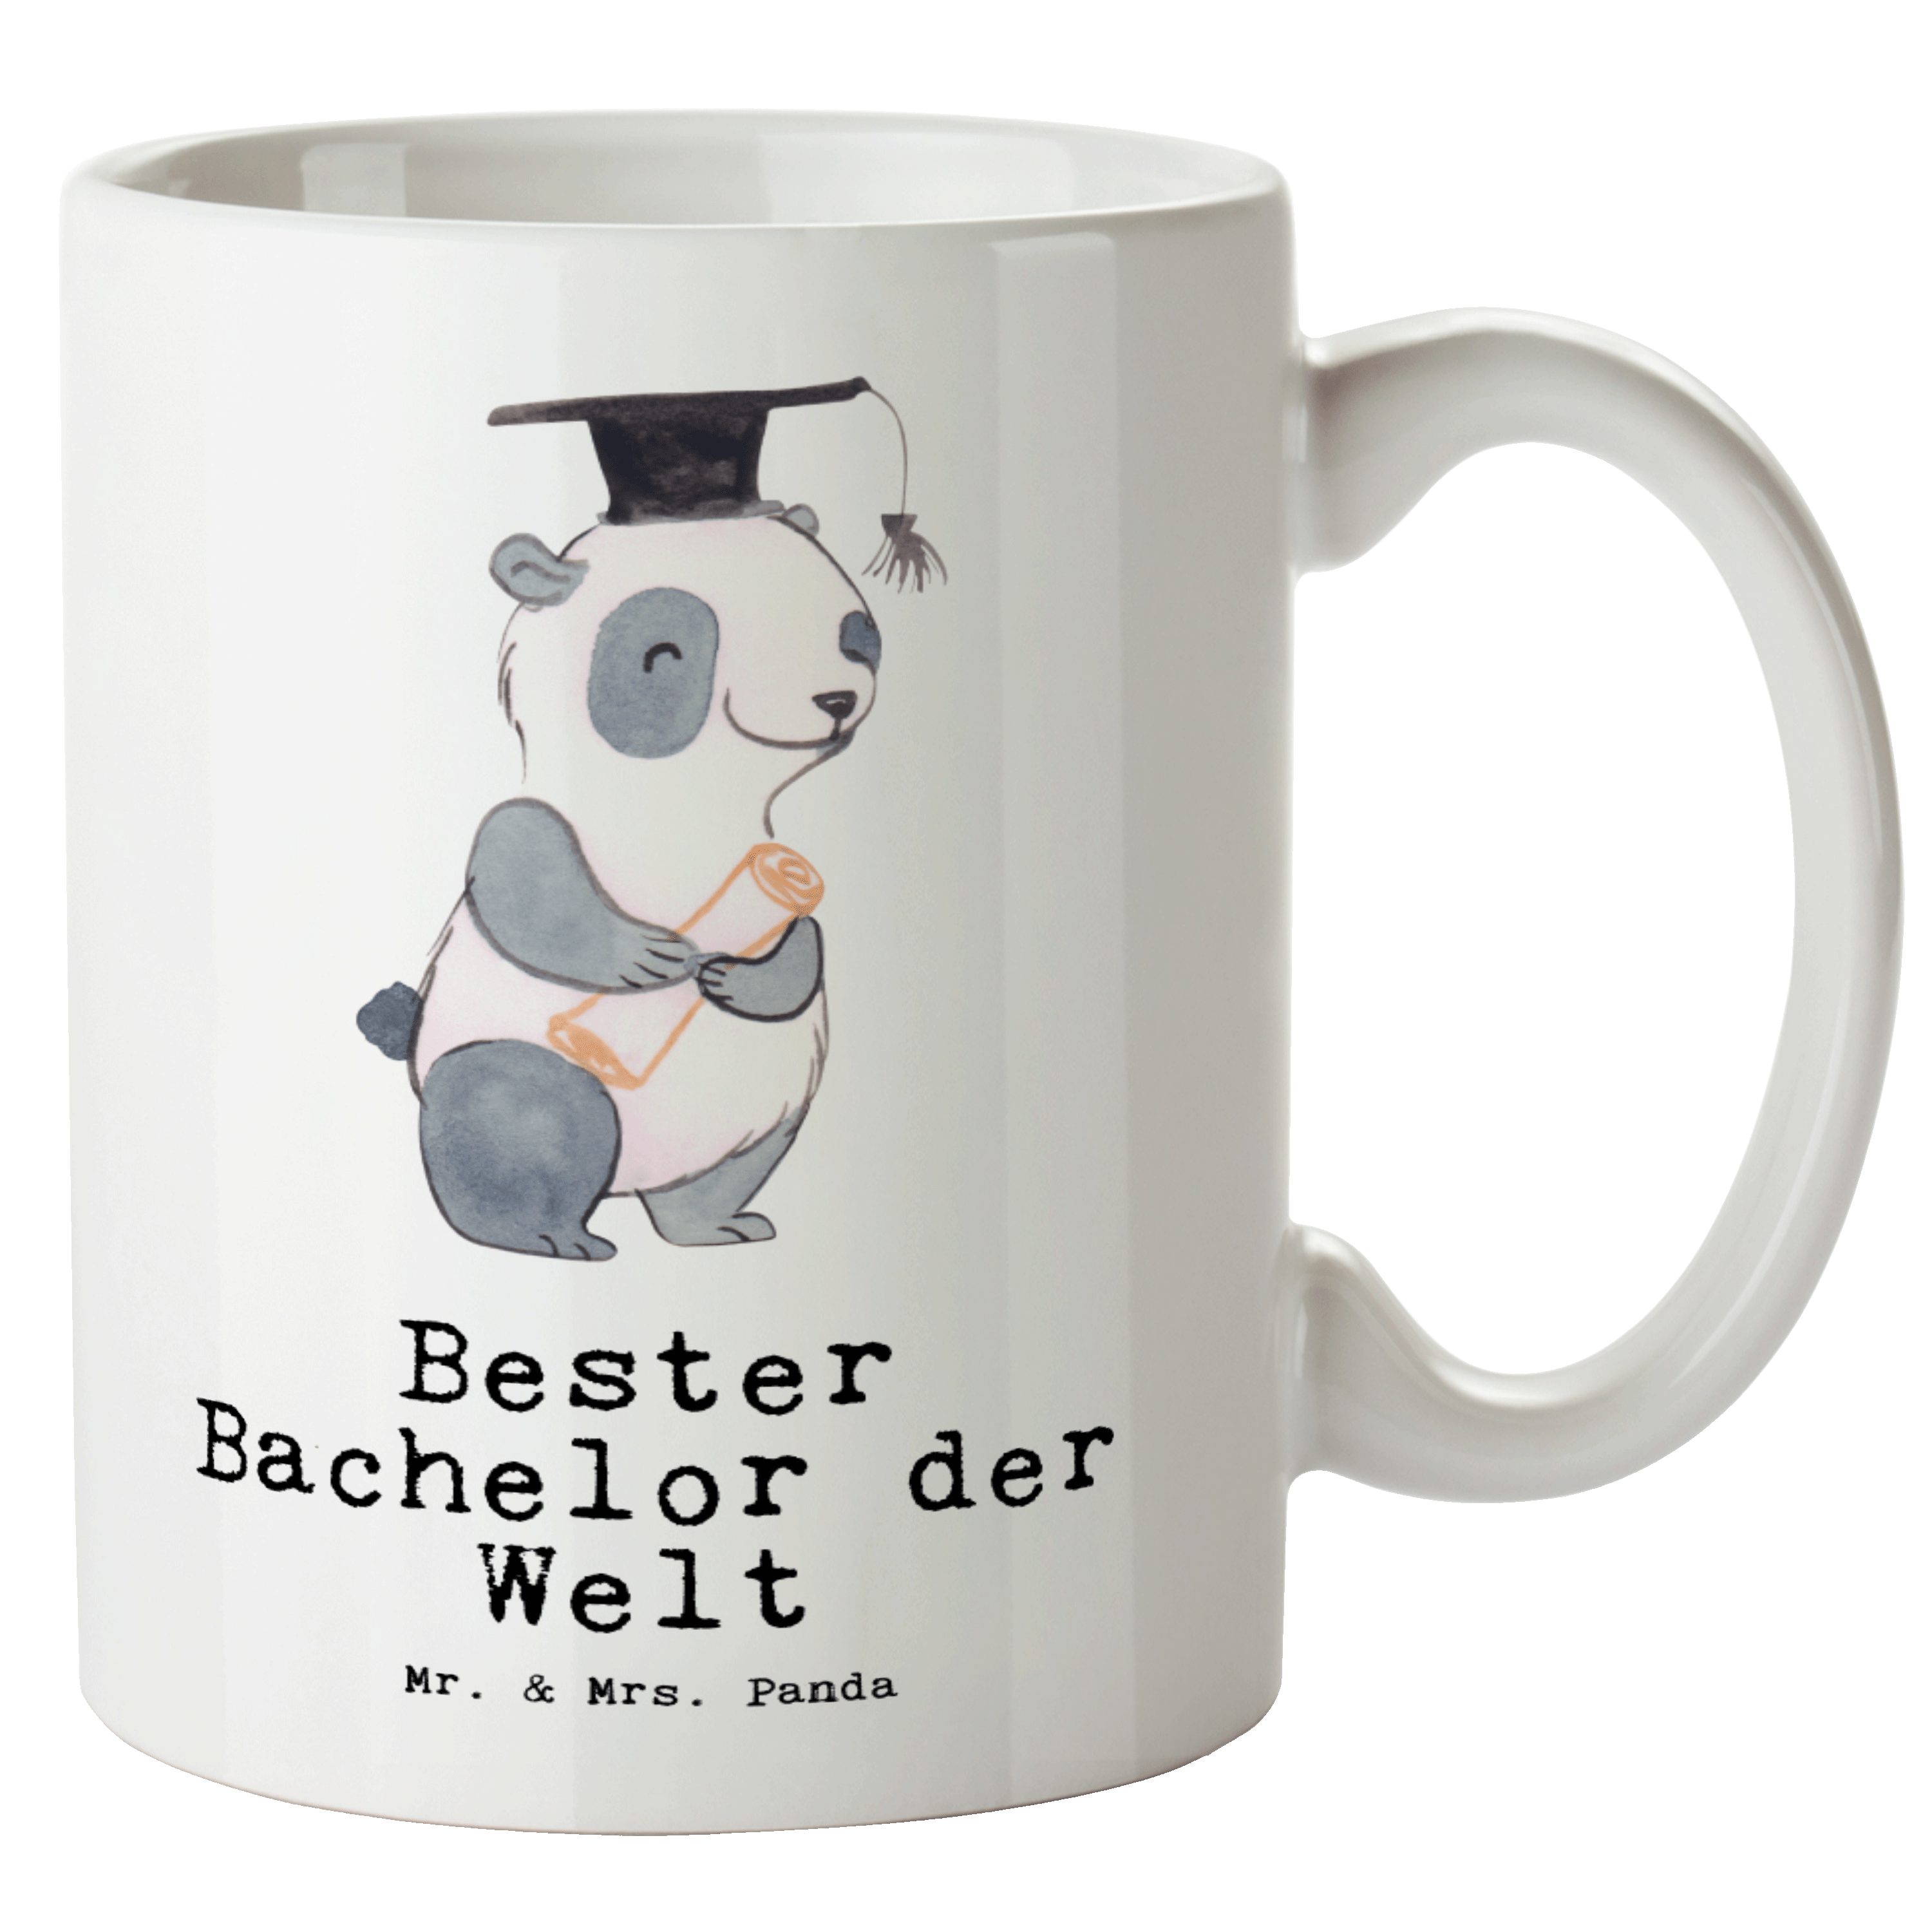 Mr. & Mrs. Panda Tasse Panda Bester Bachelor der Welt - Weiß - Geschenk, witzig, Große Tasse, XL Tasse Keramik